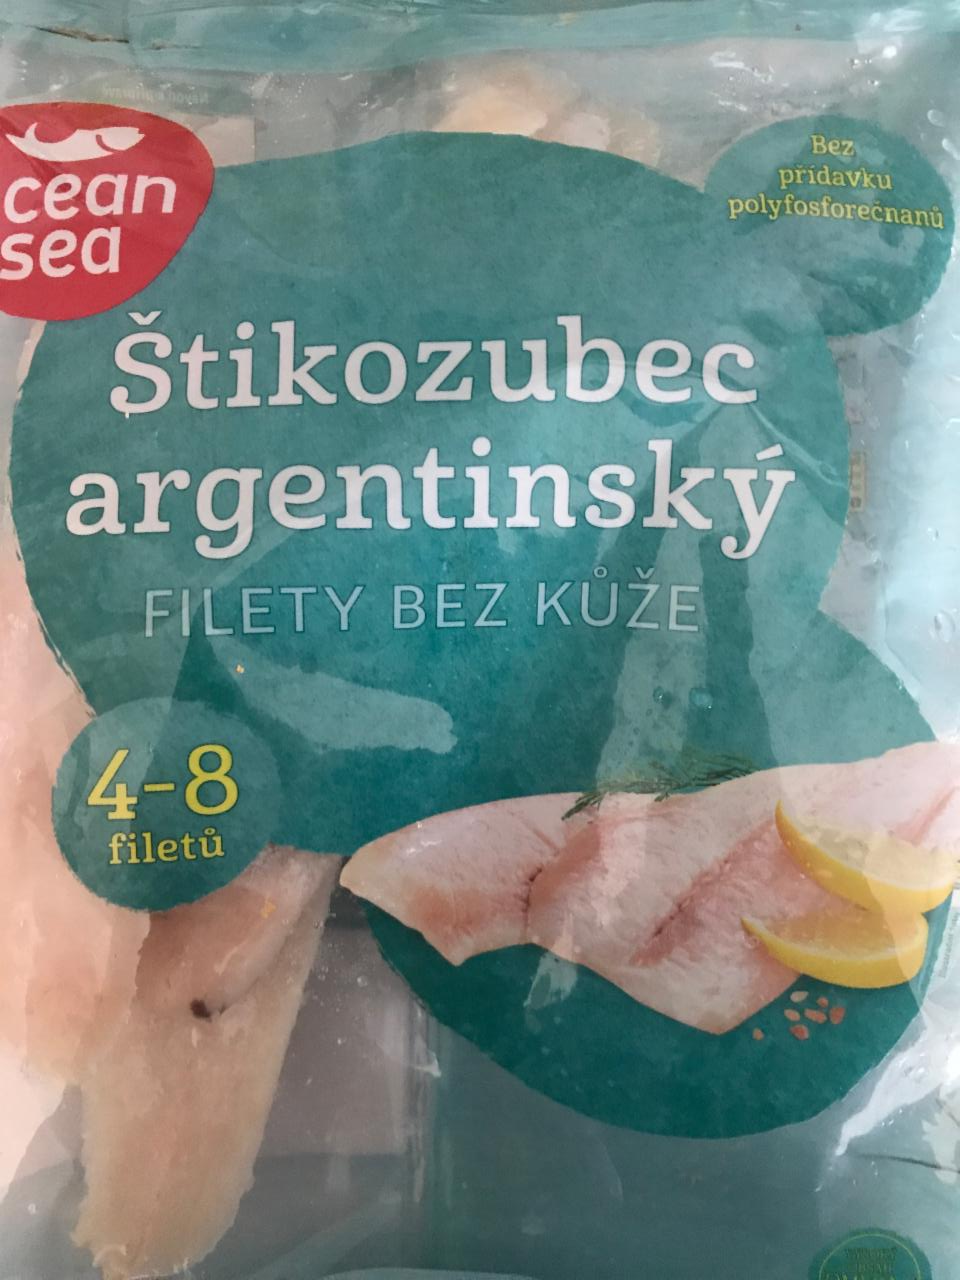 Fotografie - Štikozubec argentinský filety bez kůže Ocean Sea